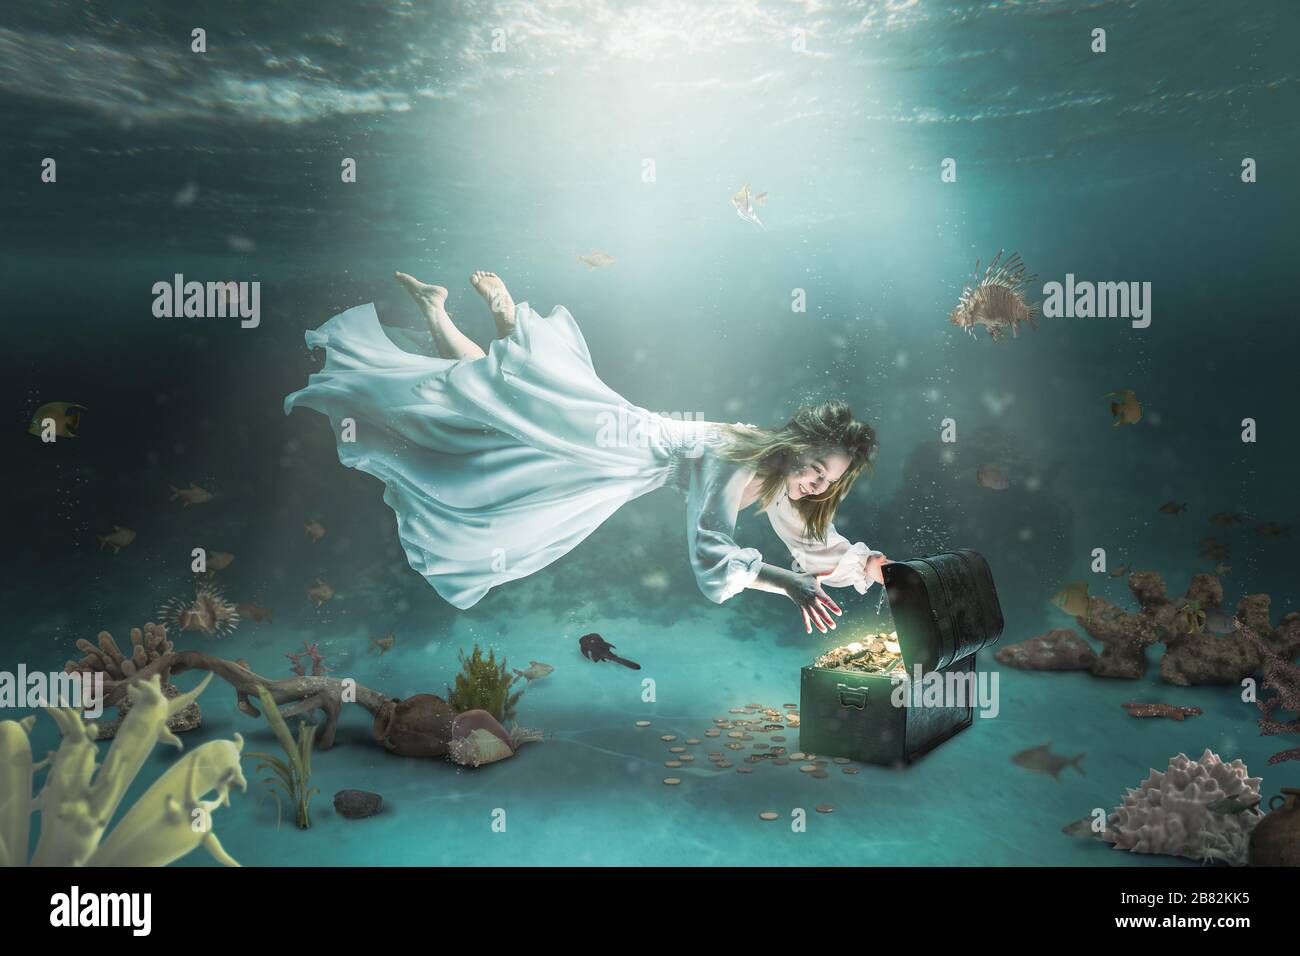 Femme avec une robe blanche longue nage sous l'eau dans l'océan et découvre  un Trésor coffre plein de pièces d'or. Concept d'aventure, de richesse et  de succès Photo Stock - Alamy